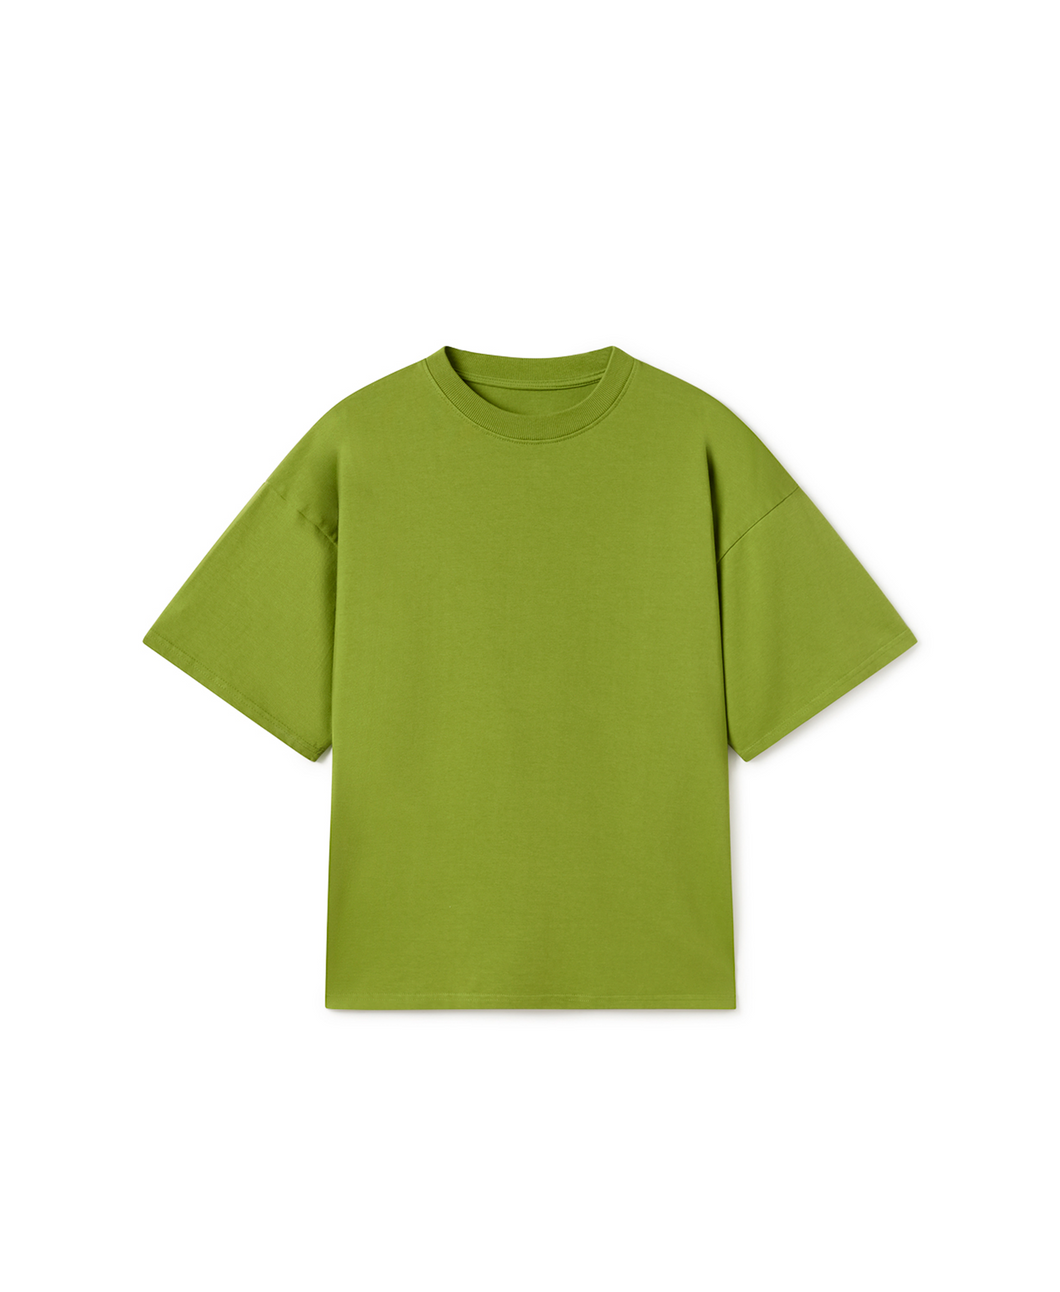 300 GSM 'Swamp Green' T-Shirt